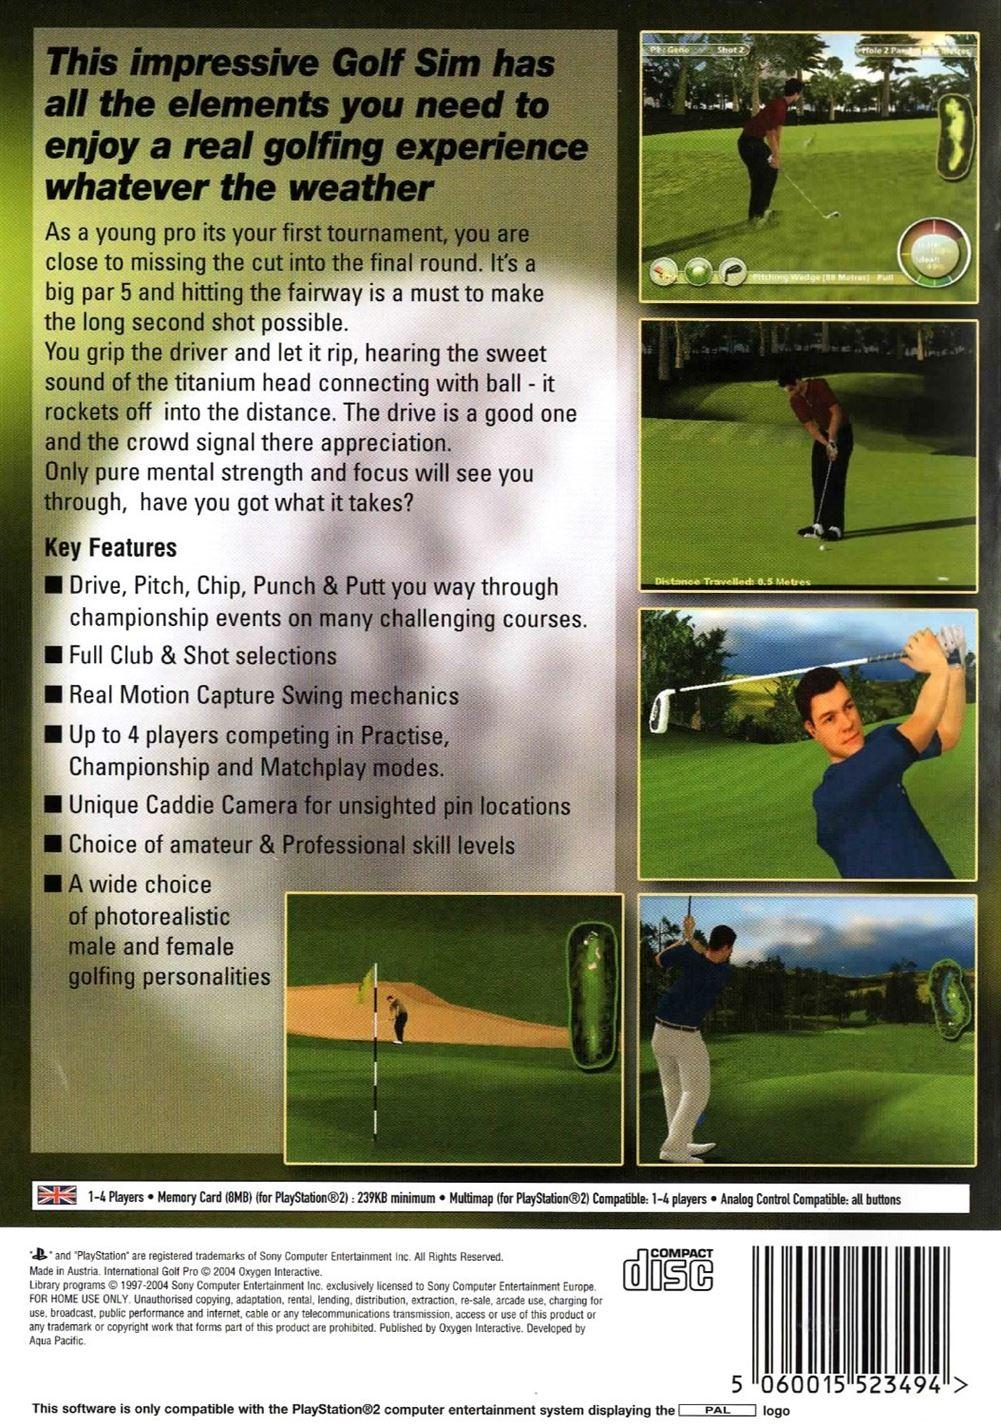 International Golf Pro PS2 (PlayStation 2) - UK Seller